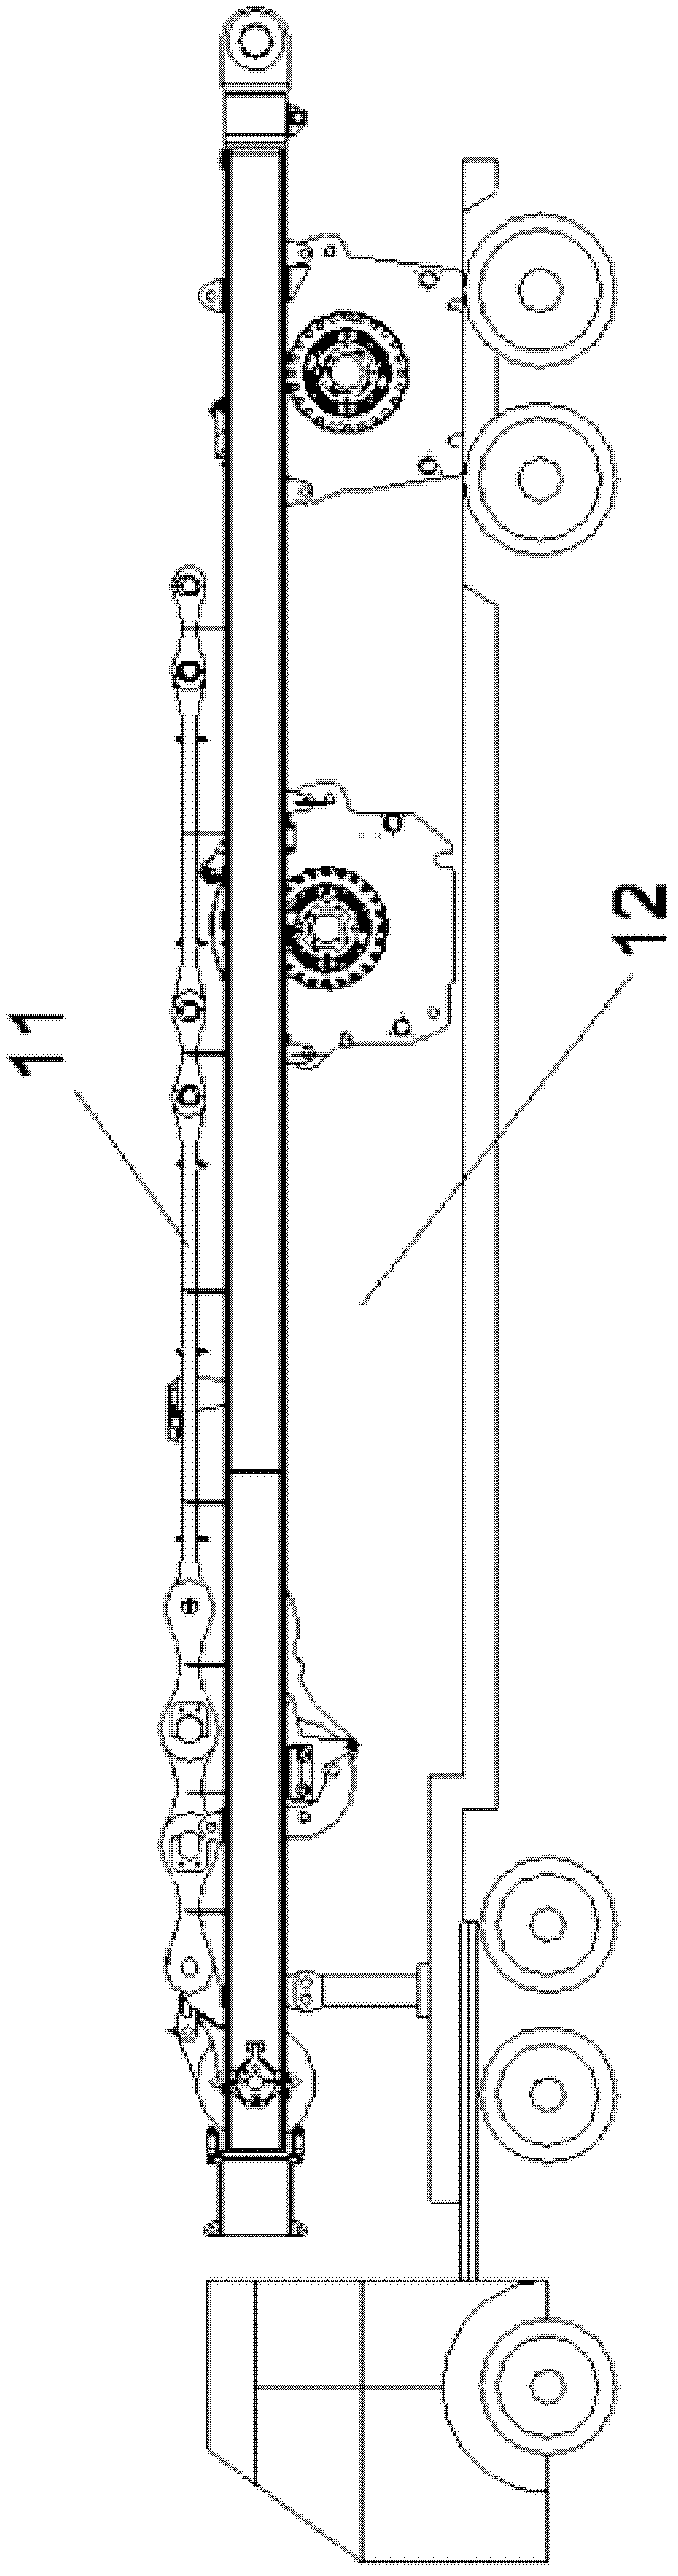 Main amplitude mast of crawler crane and crane comprising mast